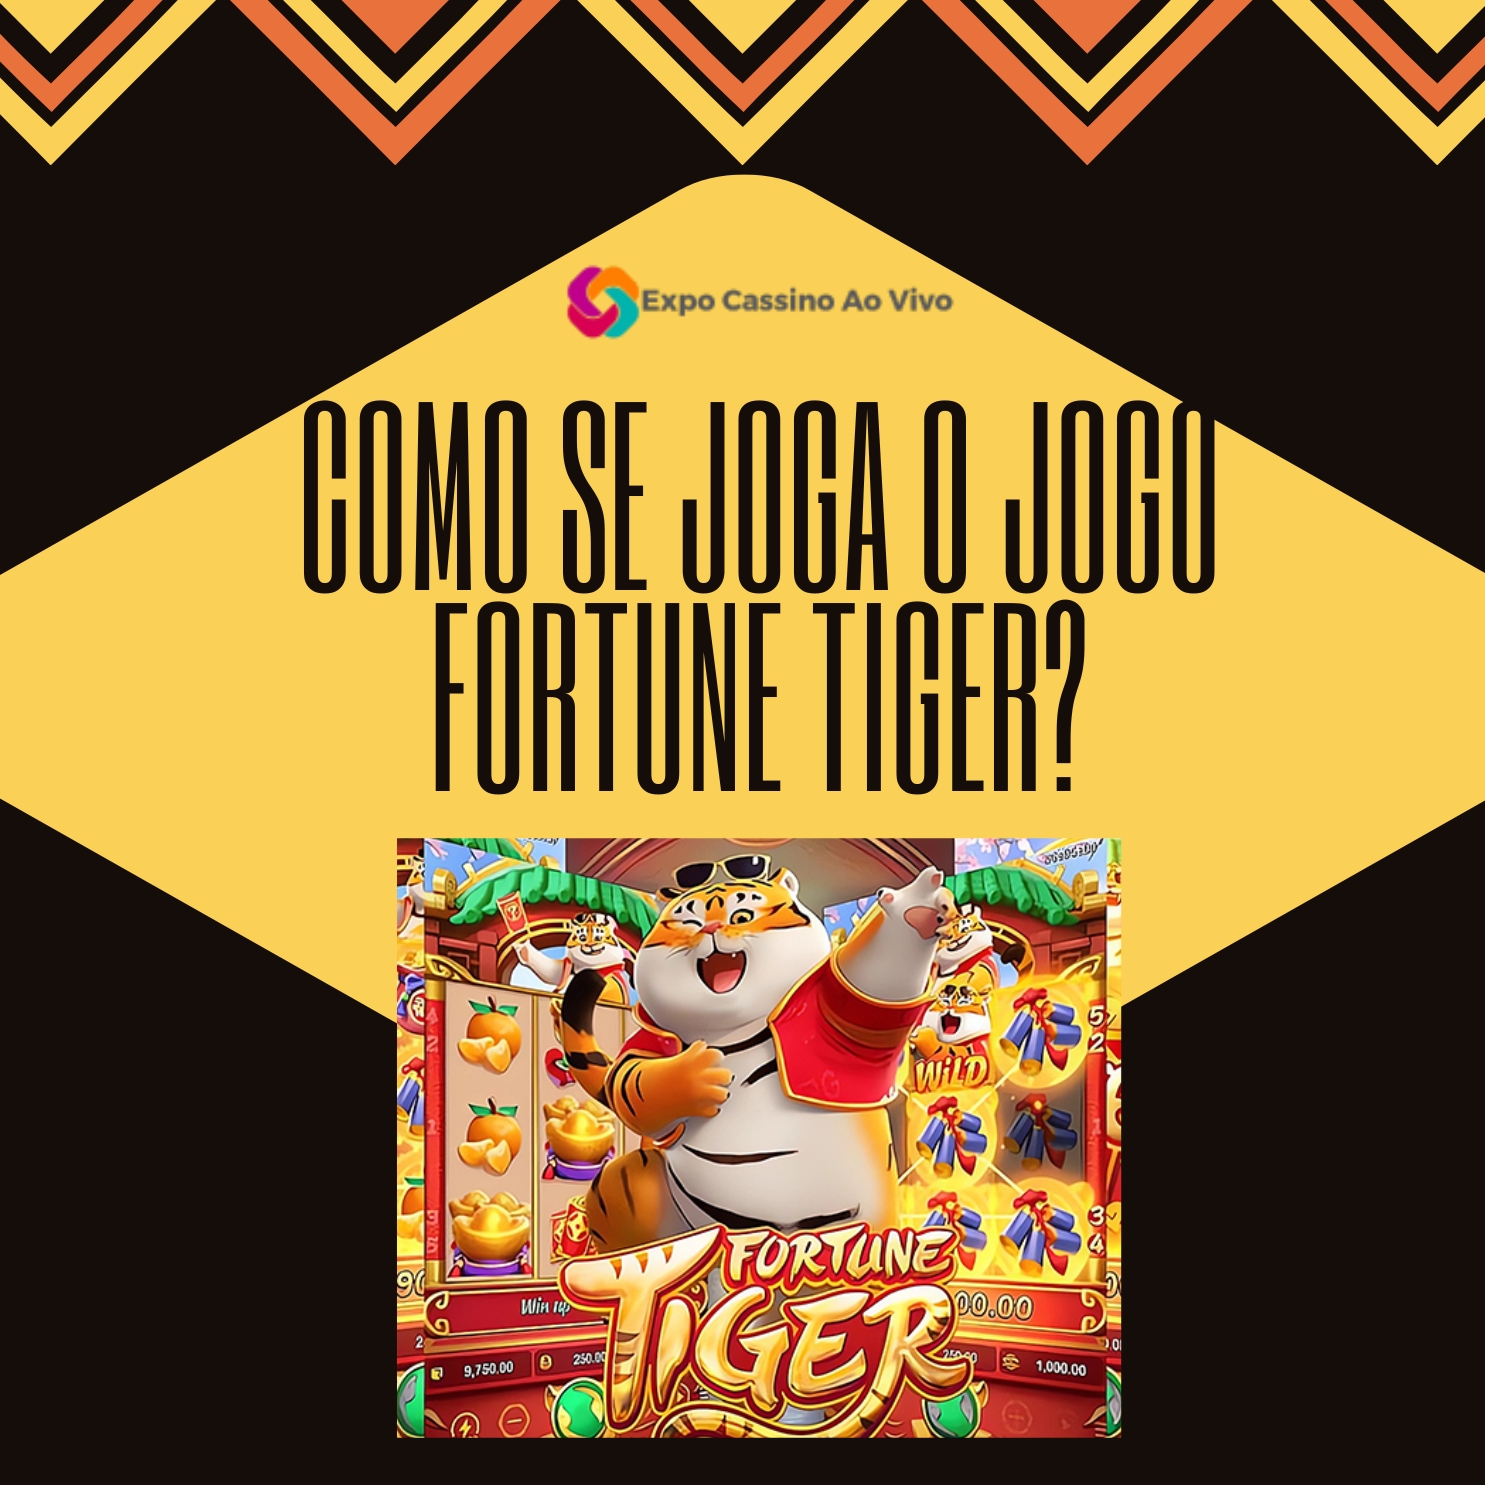 Como Funciona o Jogo do Fortune Tiger? - PSX Brasil